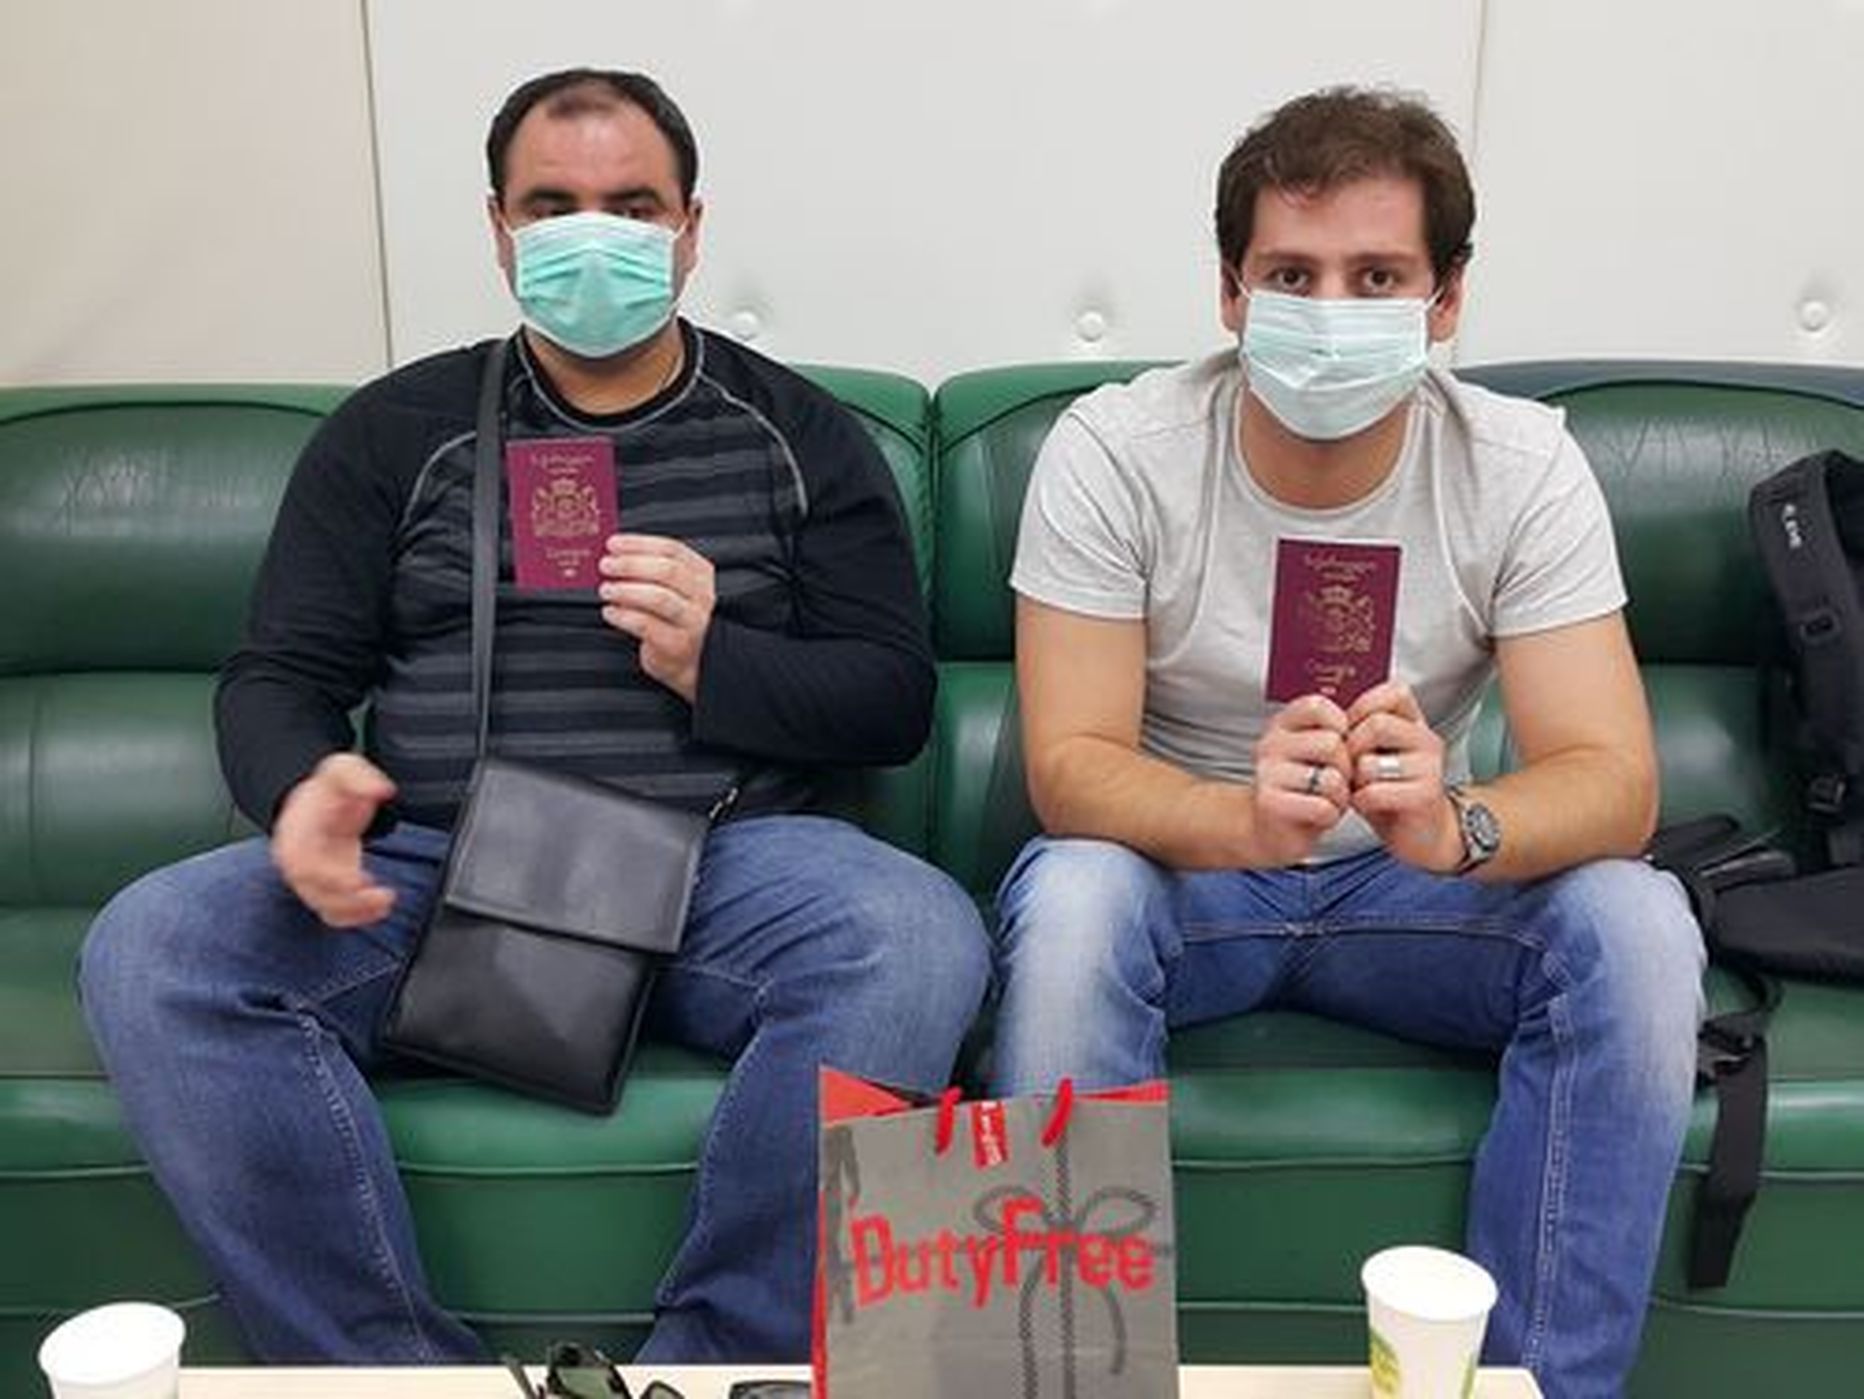 Taiwani immigratsiooniametnikud tabasid Taipei lennujaamas võltsitud Eesti passe kasutanud grusiinid. Pildil hoiavad mehed käes nende pagasist leitud õigeid Gruusia passe.